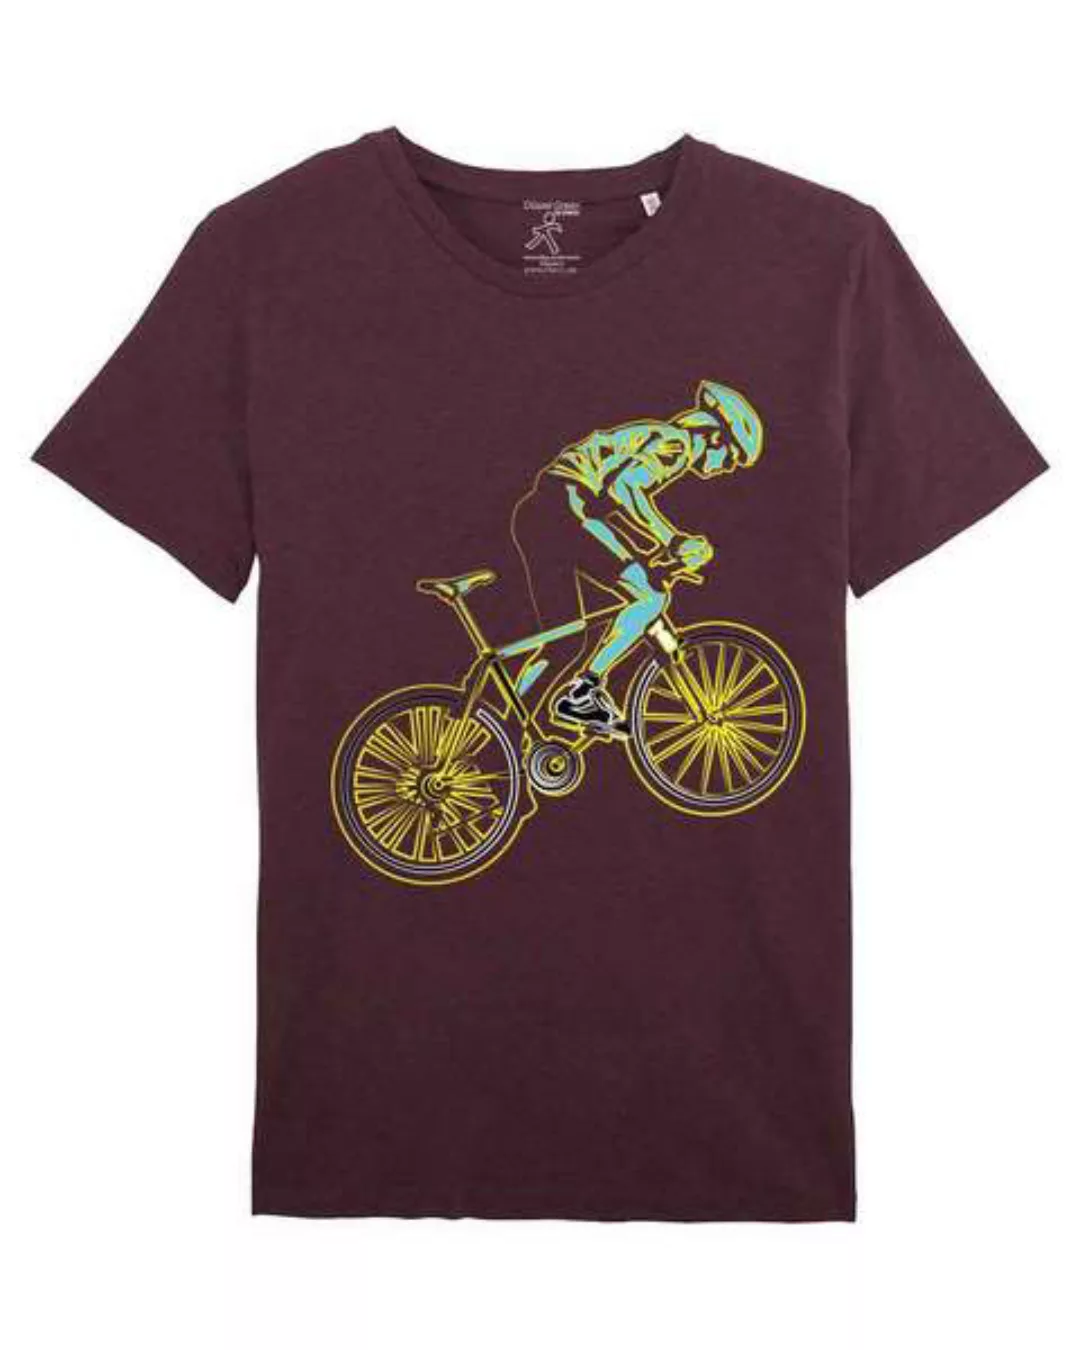 Bio T-shirt Mit Rennrad, Bio Shirt Mit Rennradfahrer, Bike Shirt, günstig online kaufen